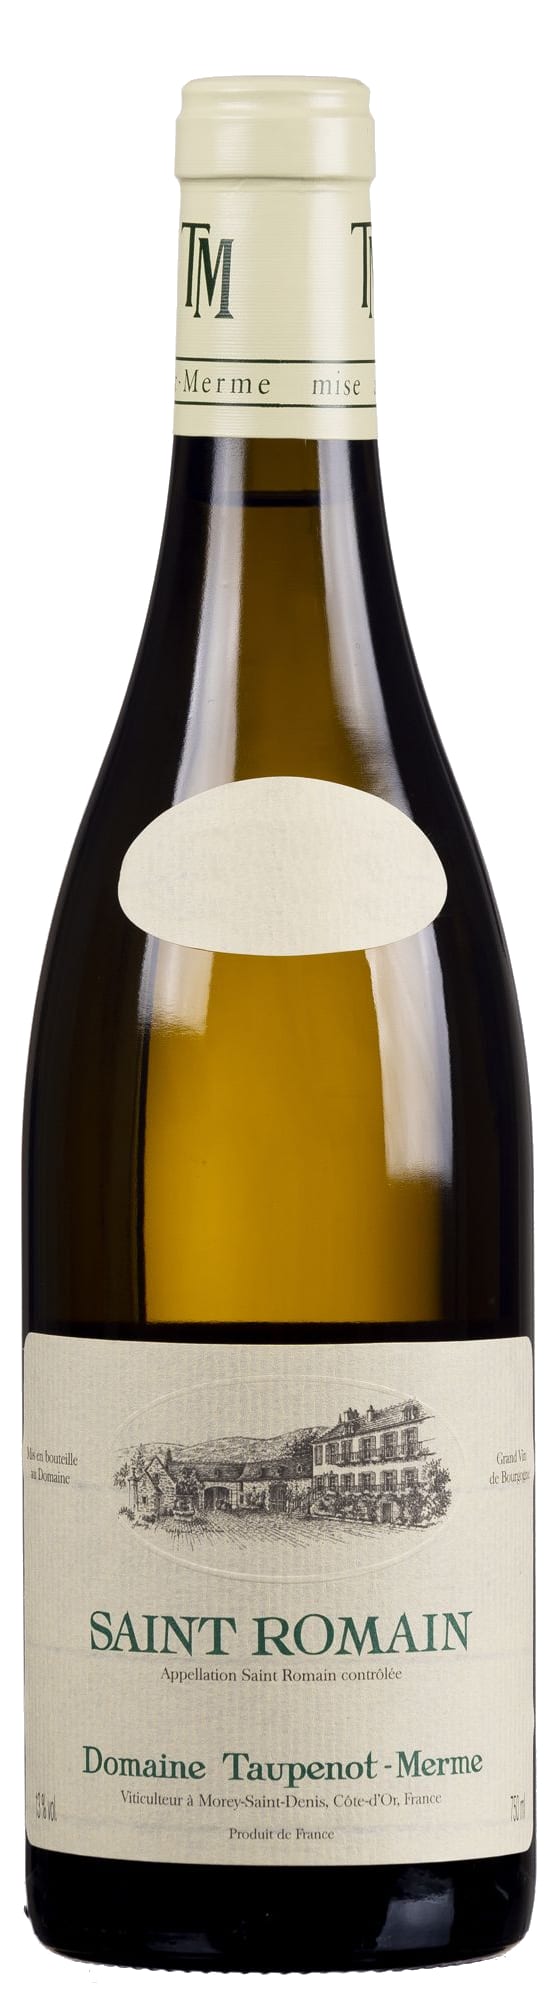 Taupenot-Merme - Saint Roman Blanc 2020 (750)